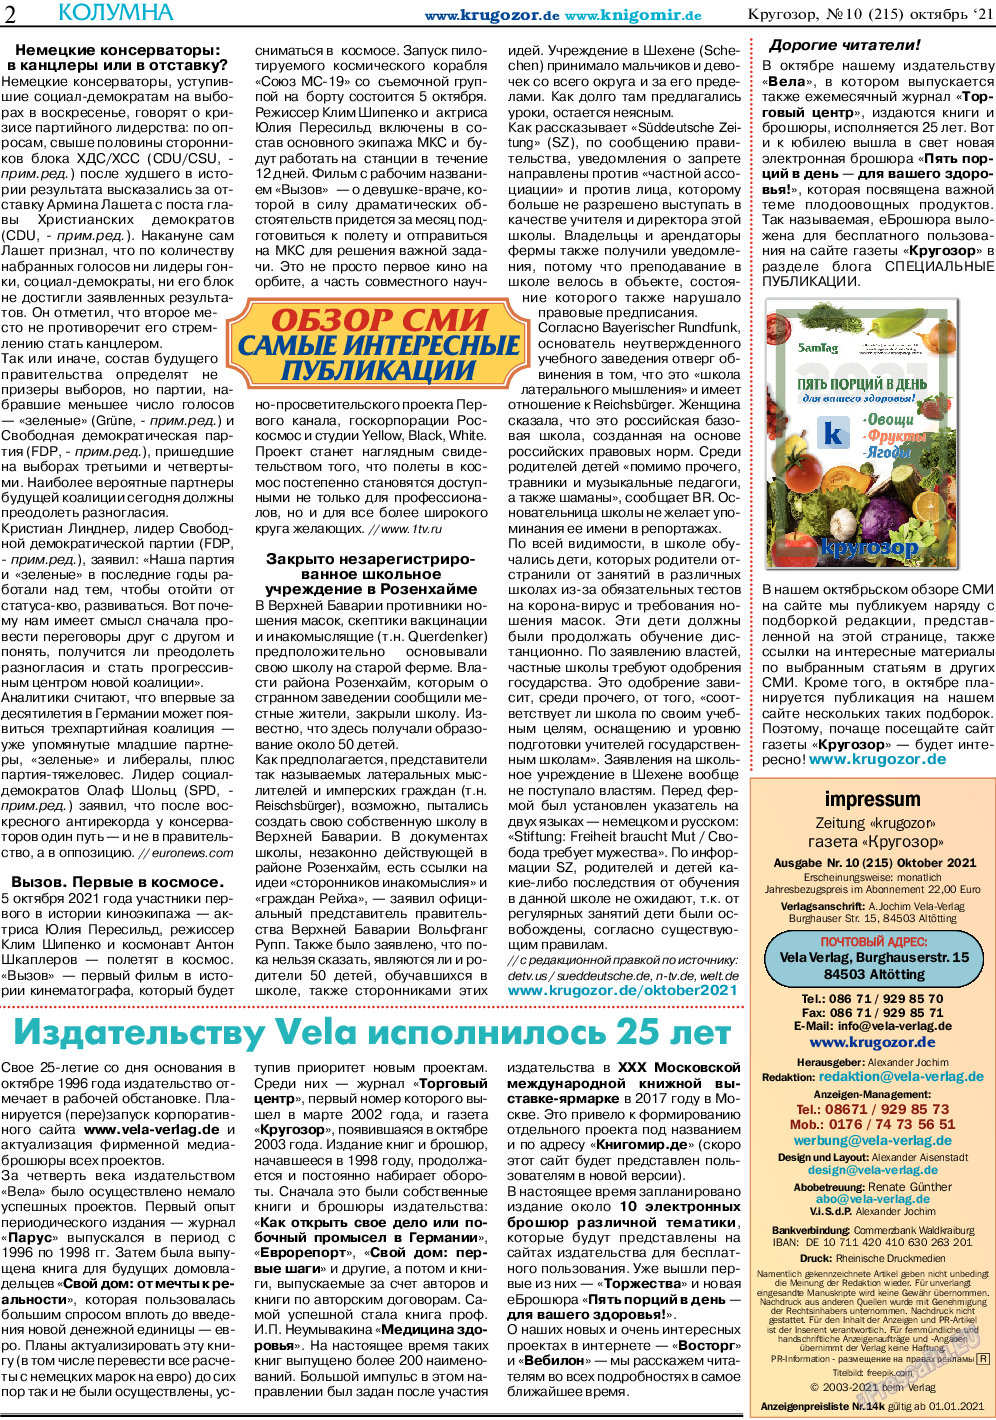 Кругозор, газета. 2021 №10 стр.2